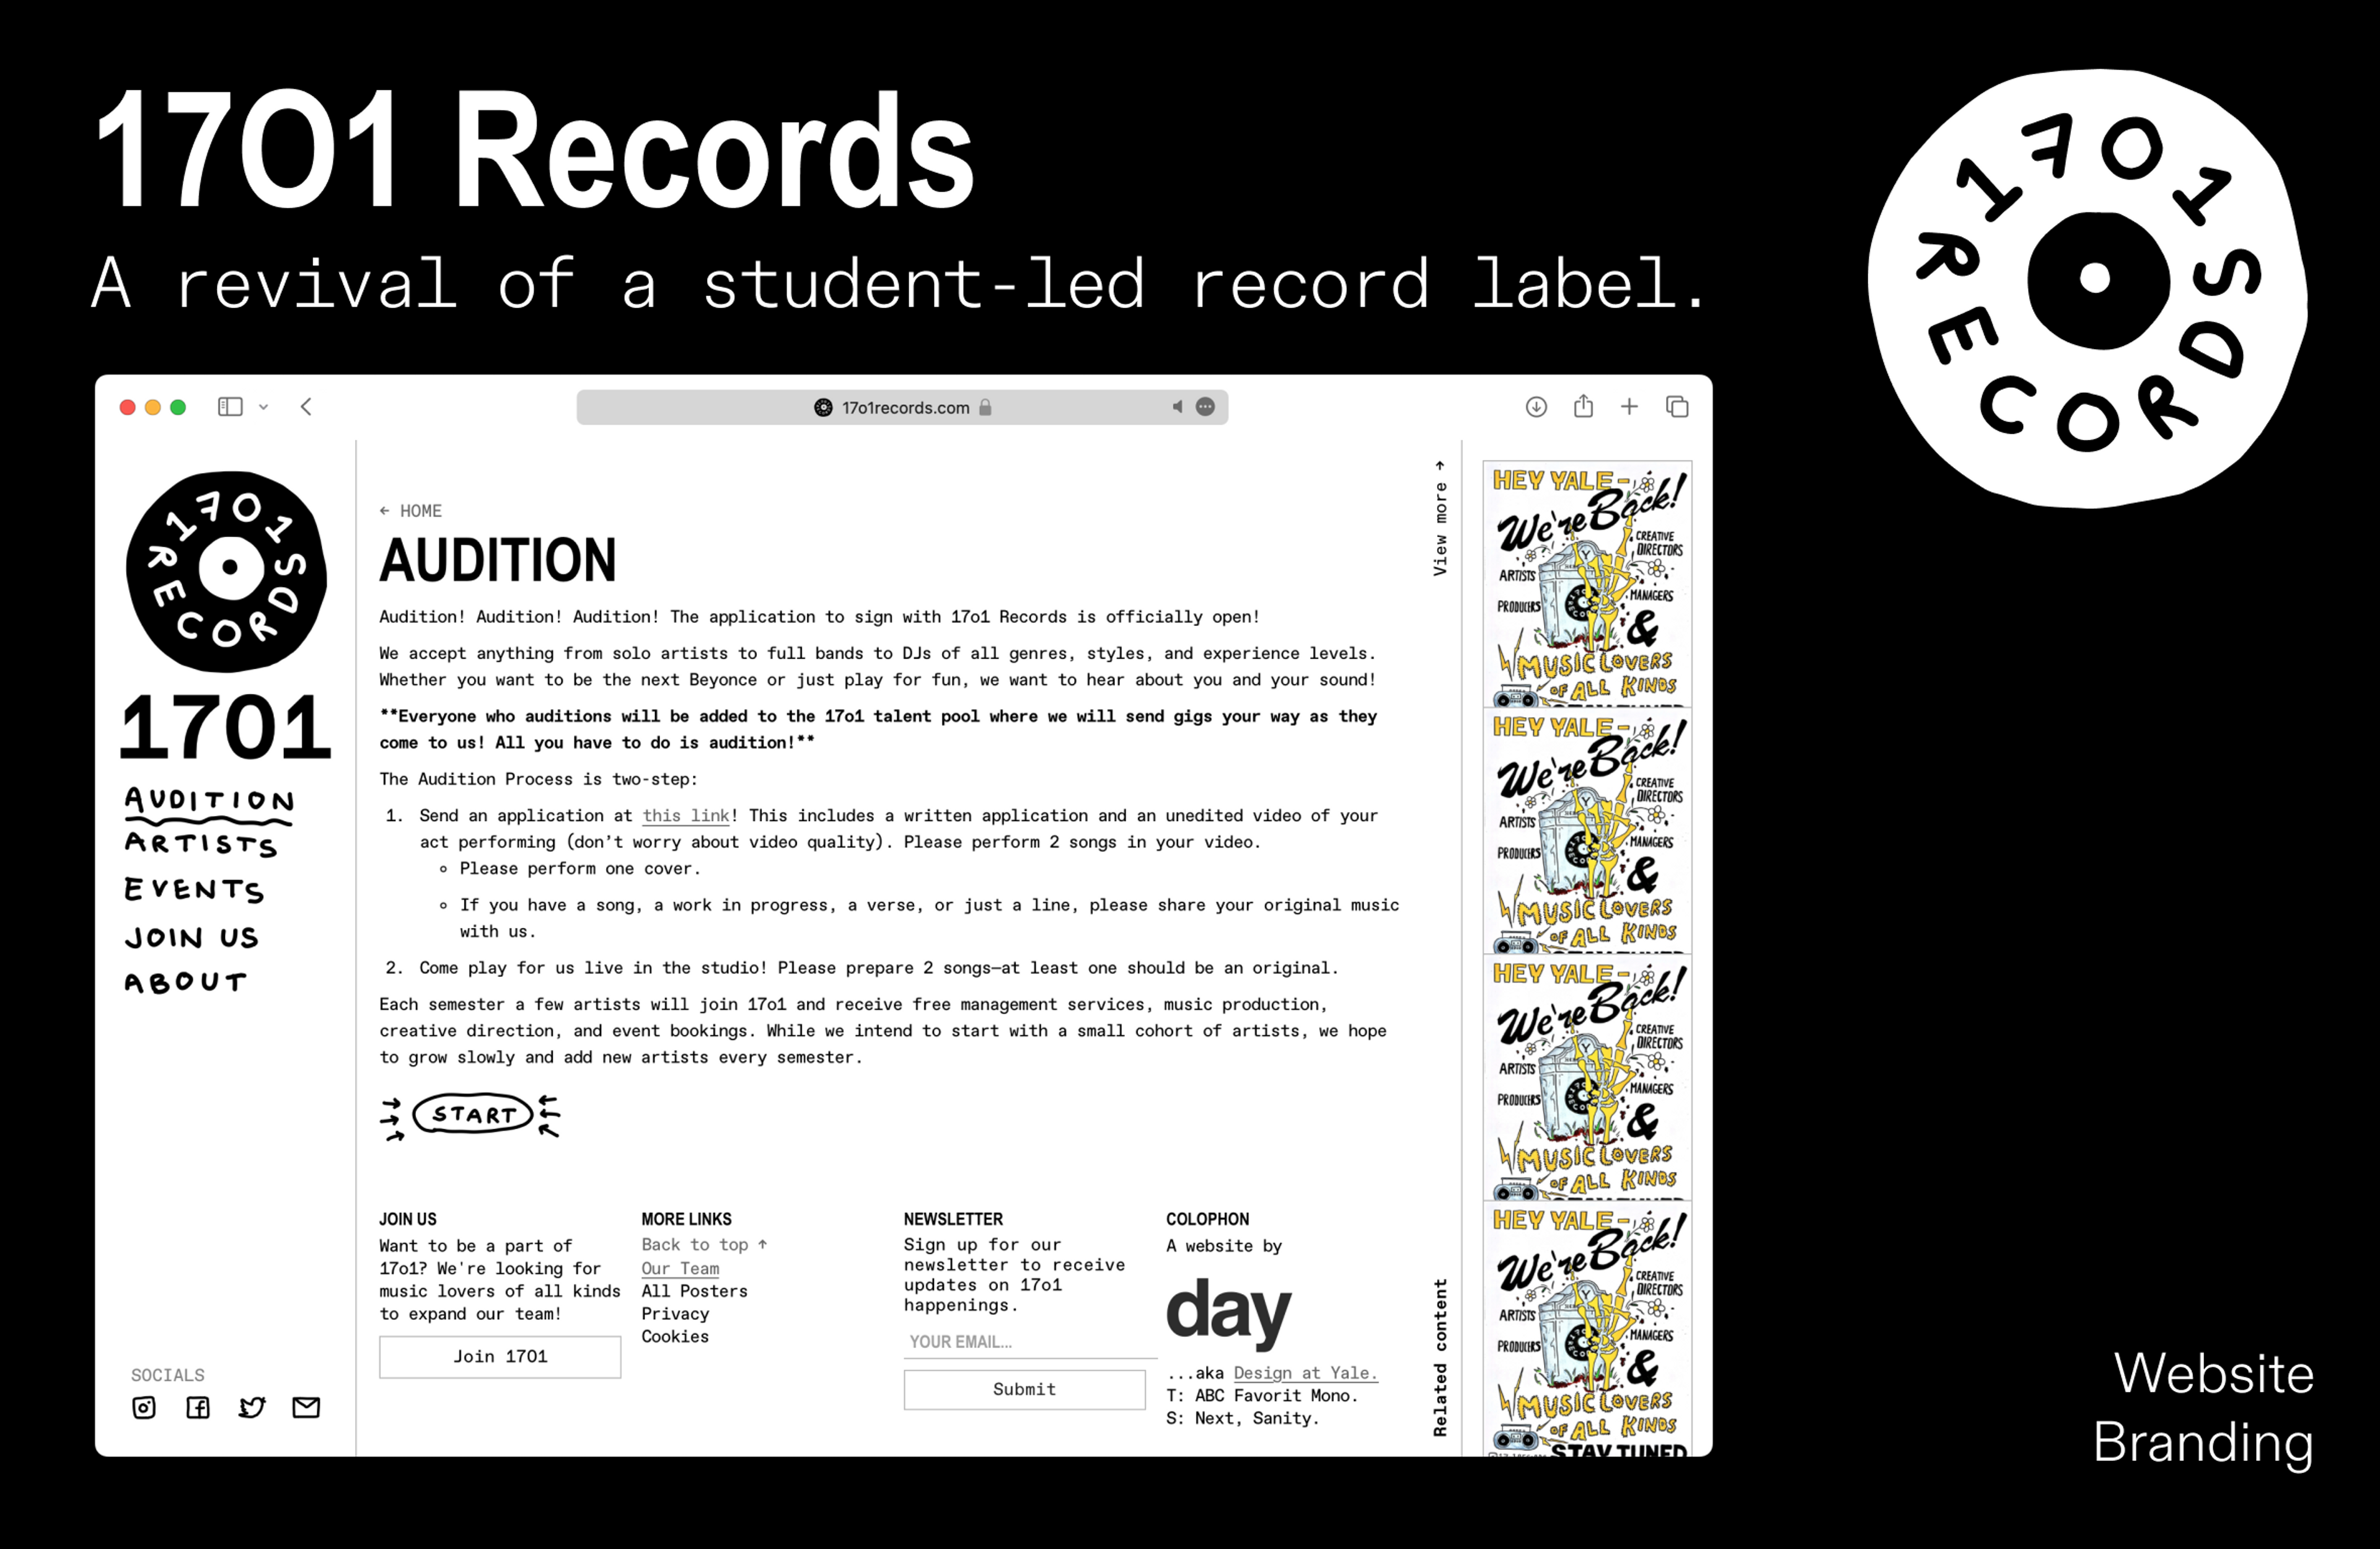 The 17o1 Records website.